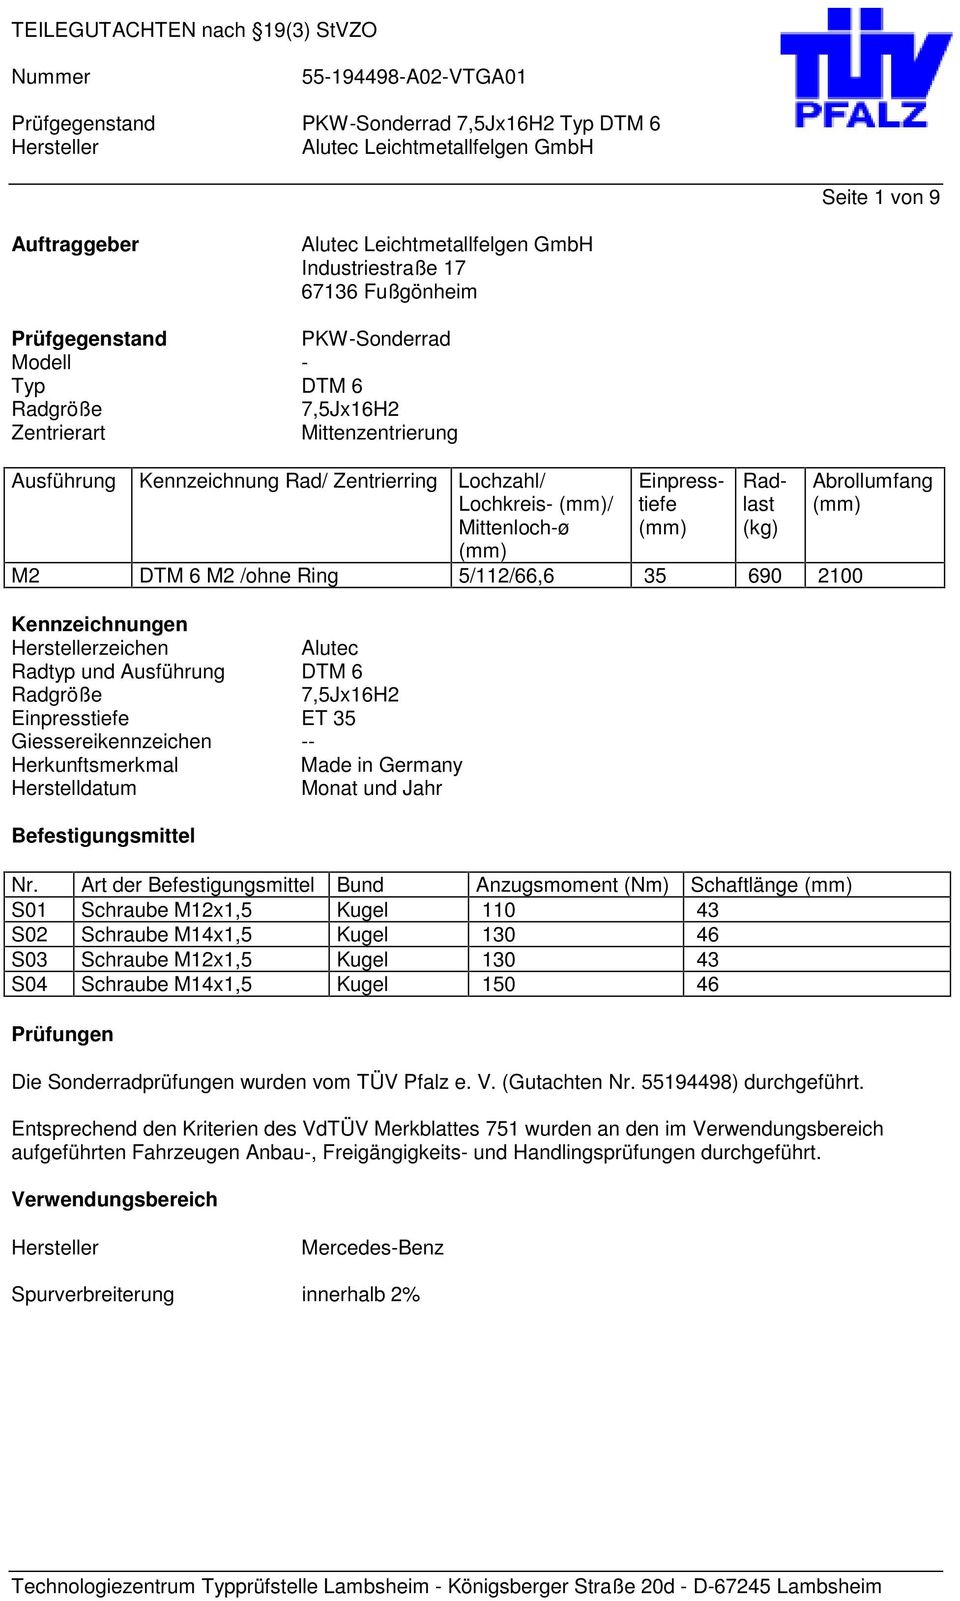 Radgröße 7,5Jx16H2 Einpresstiefe ET 35 Giessereikennzeichen -- Herkunftsmerkmal Made in Germany Herstelldatum Monat und Jahr Befestigungsmittel Nr.